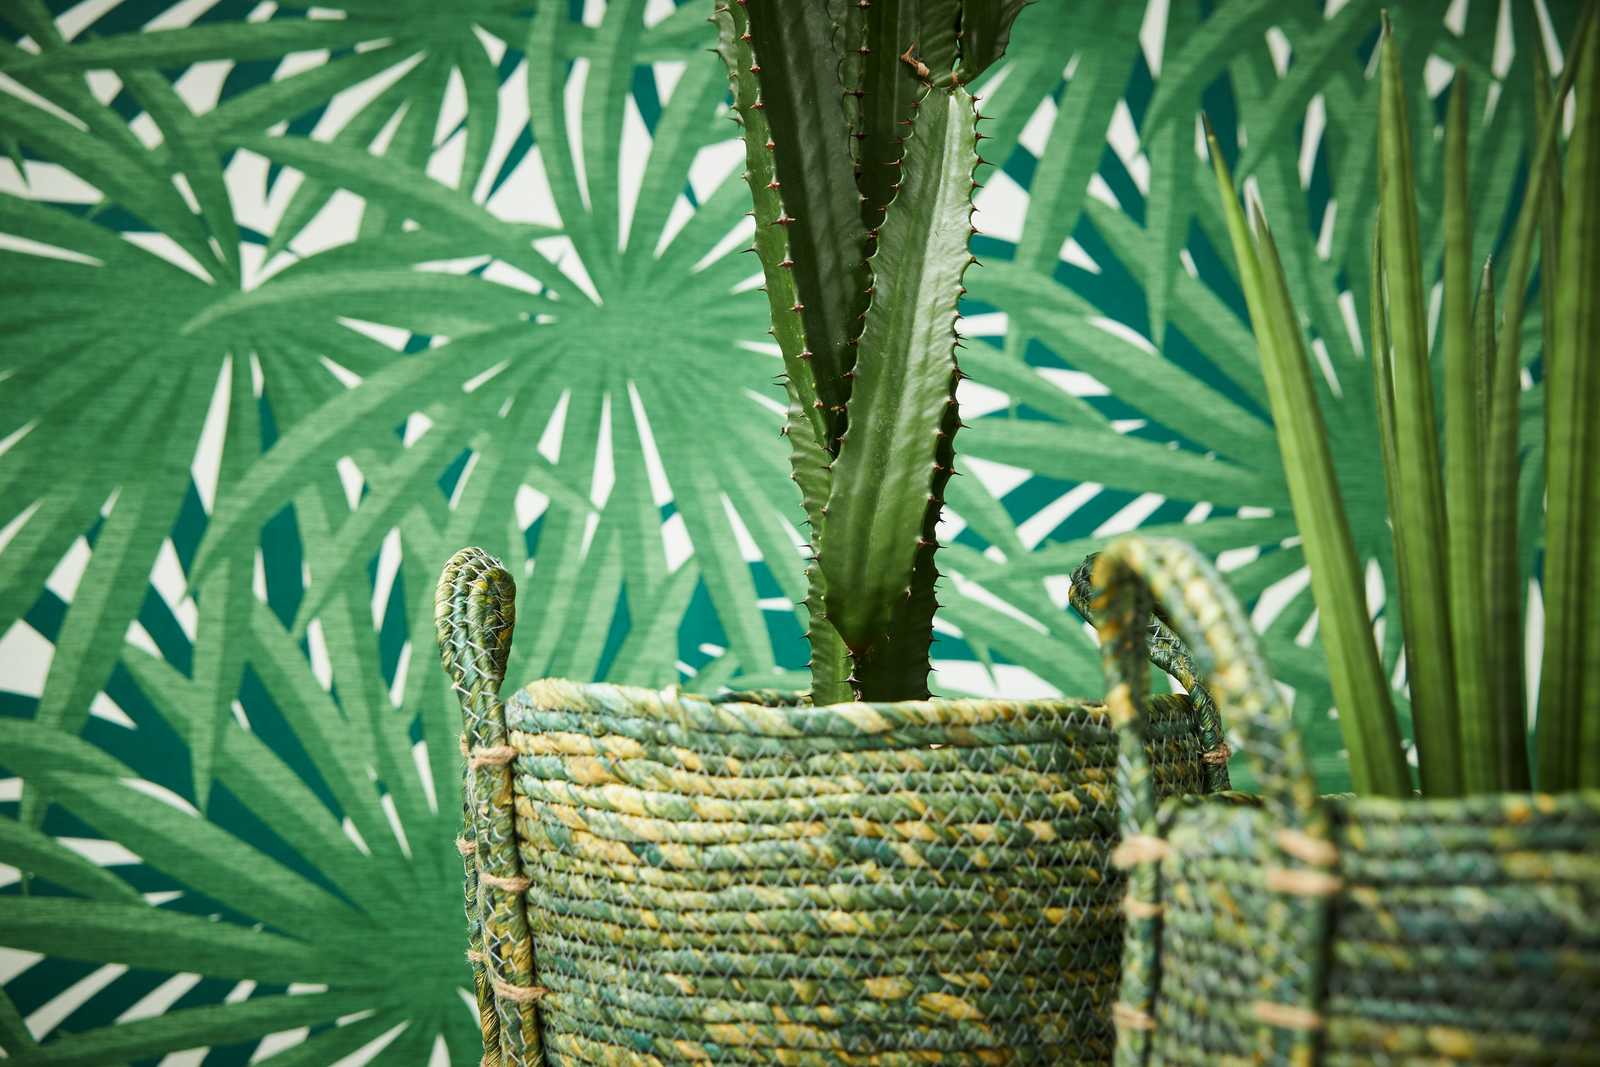             Tropisch behang met jungle design & metallic glans - groen, metallic, wit
        